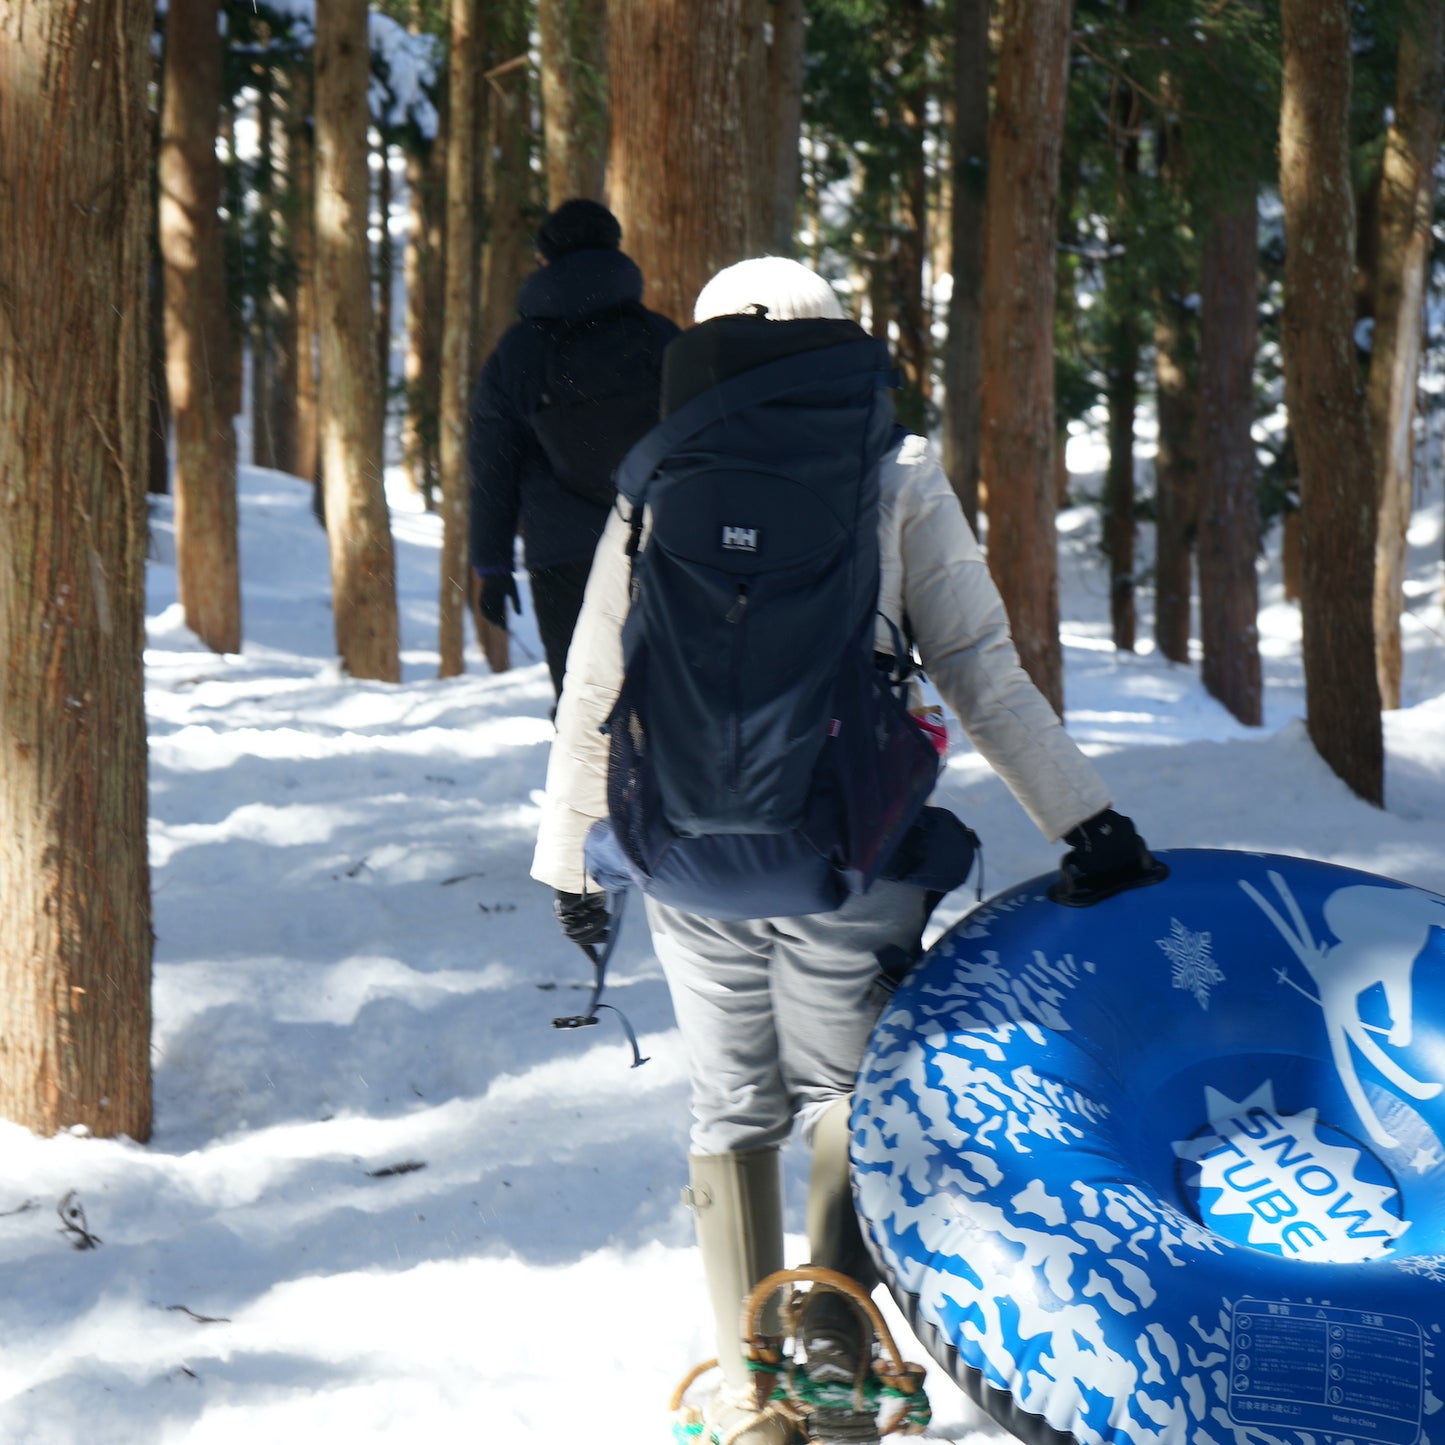 日本傳統雪鞋體驗 - 雪地健行